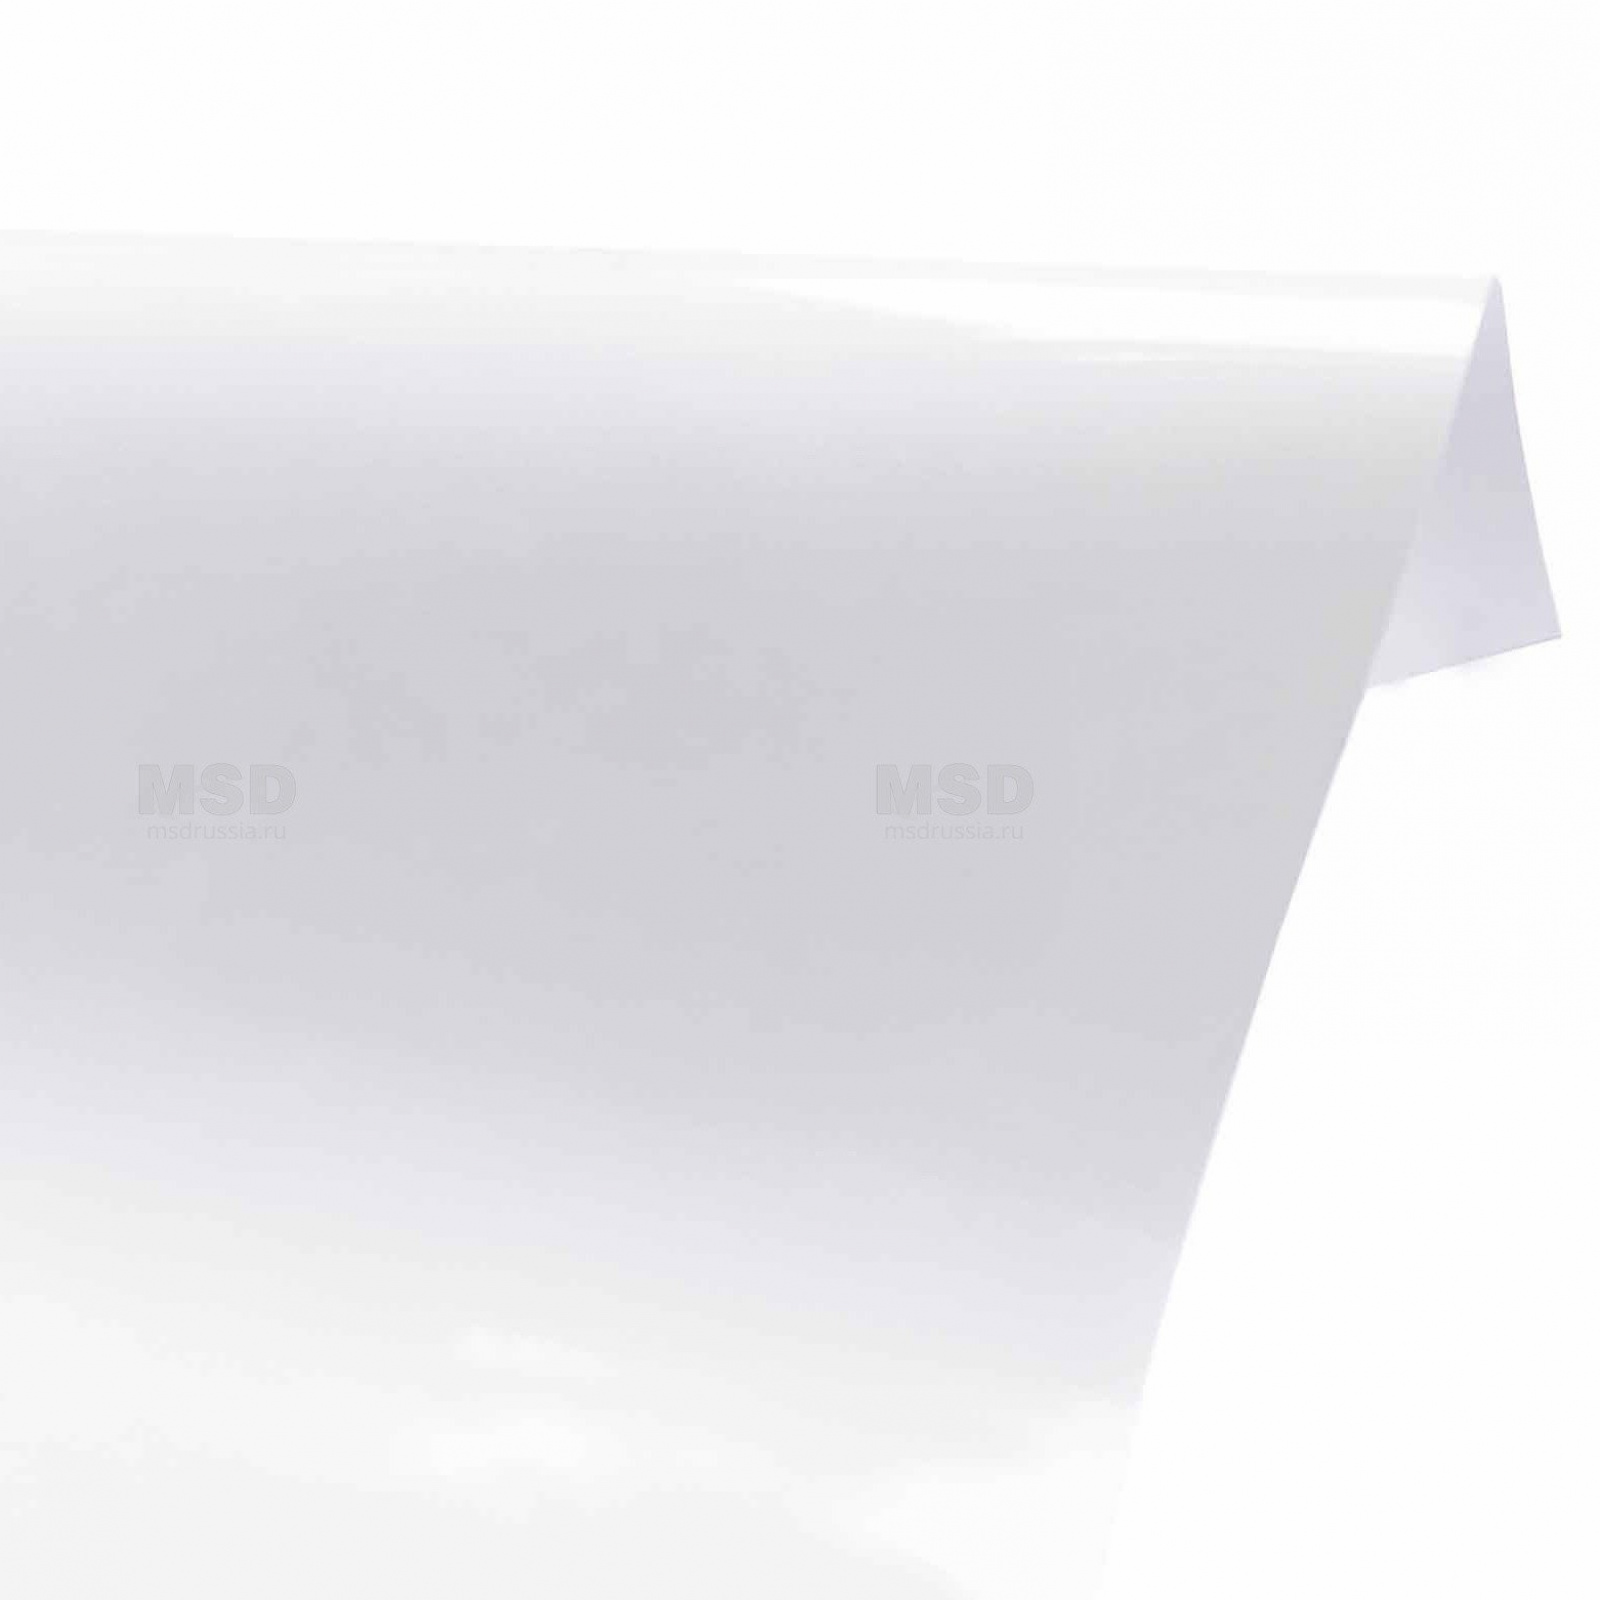 Полотно белое глянцевое 400 - 500 MSD PREMIUM (толщина 0,19 м плотность 250 г/м3)